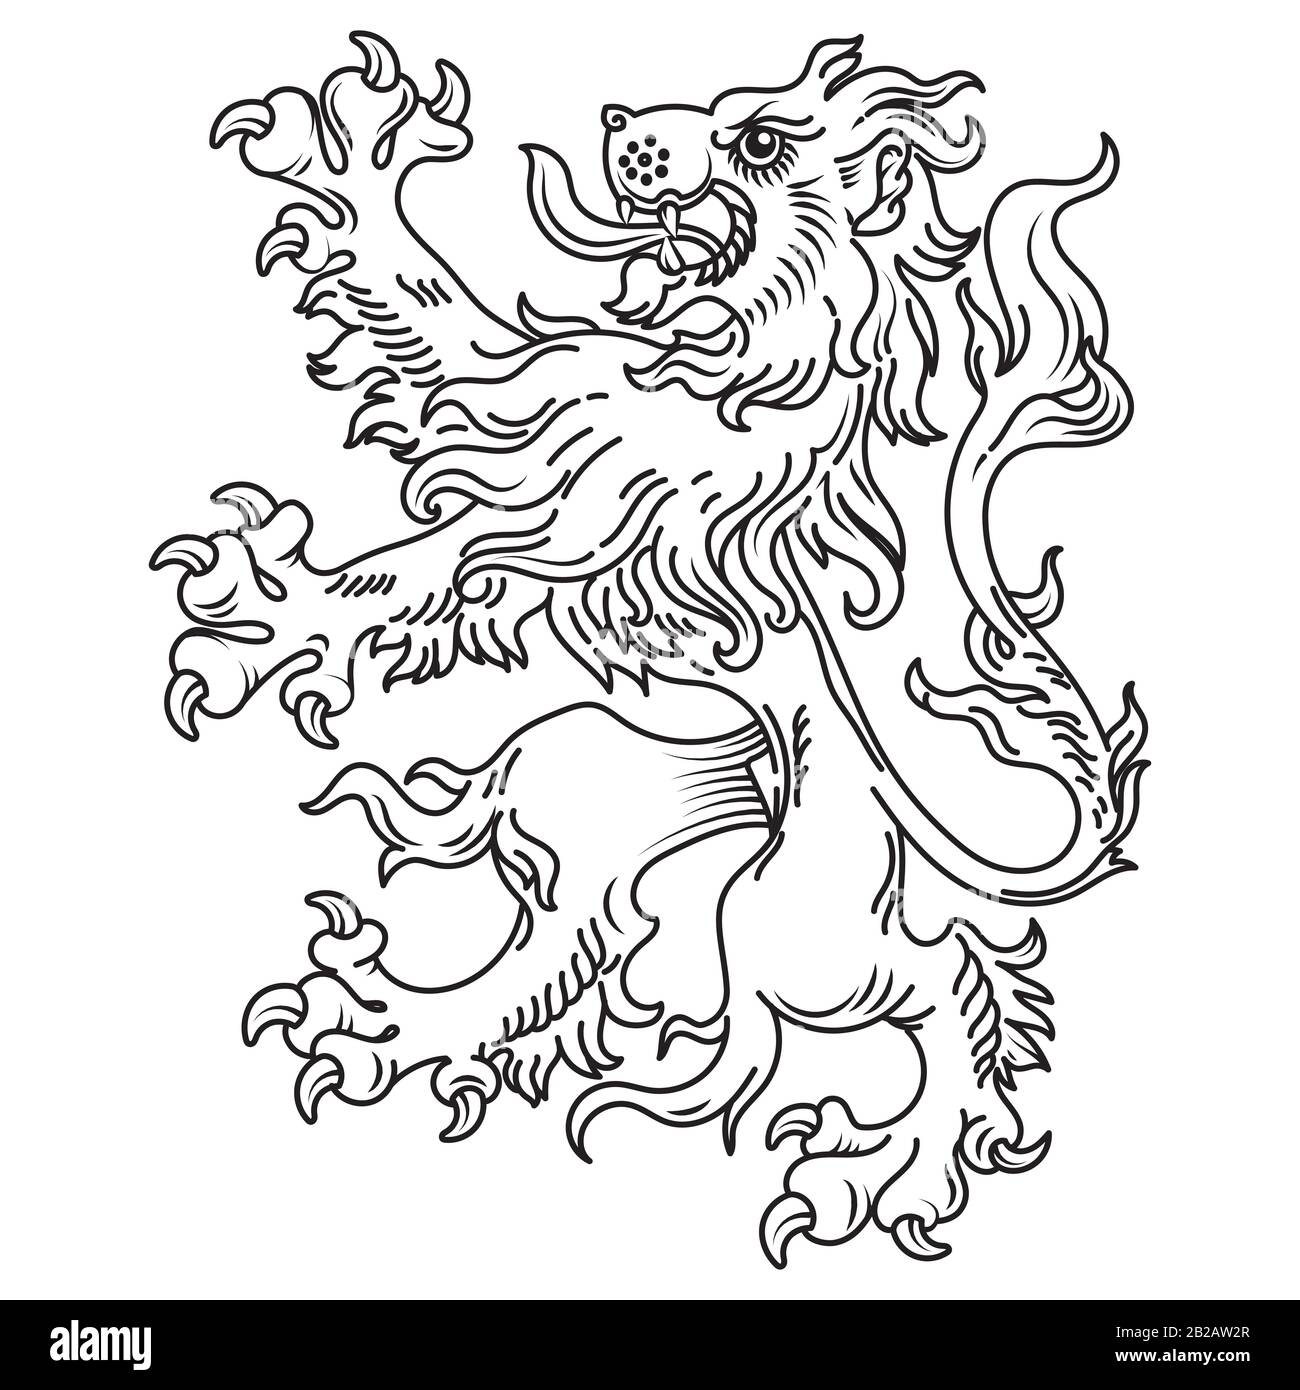 Un manteau héraldique médiéval d'armes, lion héraldique, silhouette de lion héraldique Illustration de Vecteur